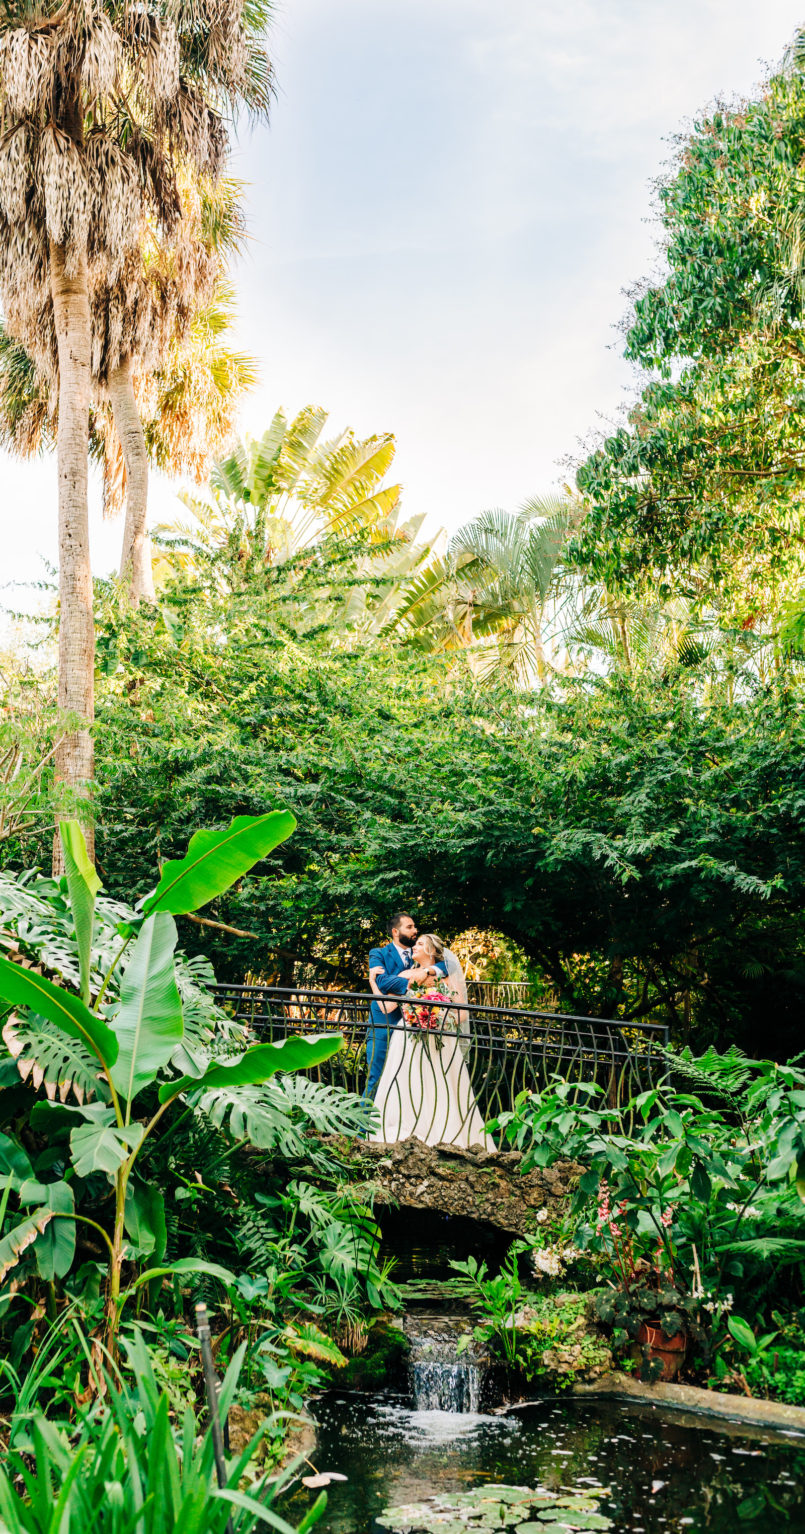 Tropical Florida Outdoor Garden Wedding Portrait | St. Petersburg Wedding Venue Sunken Gardens